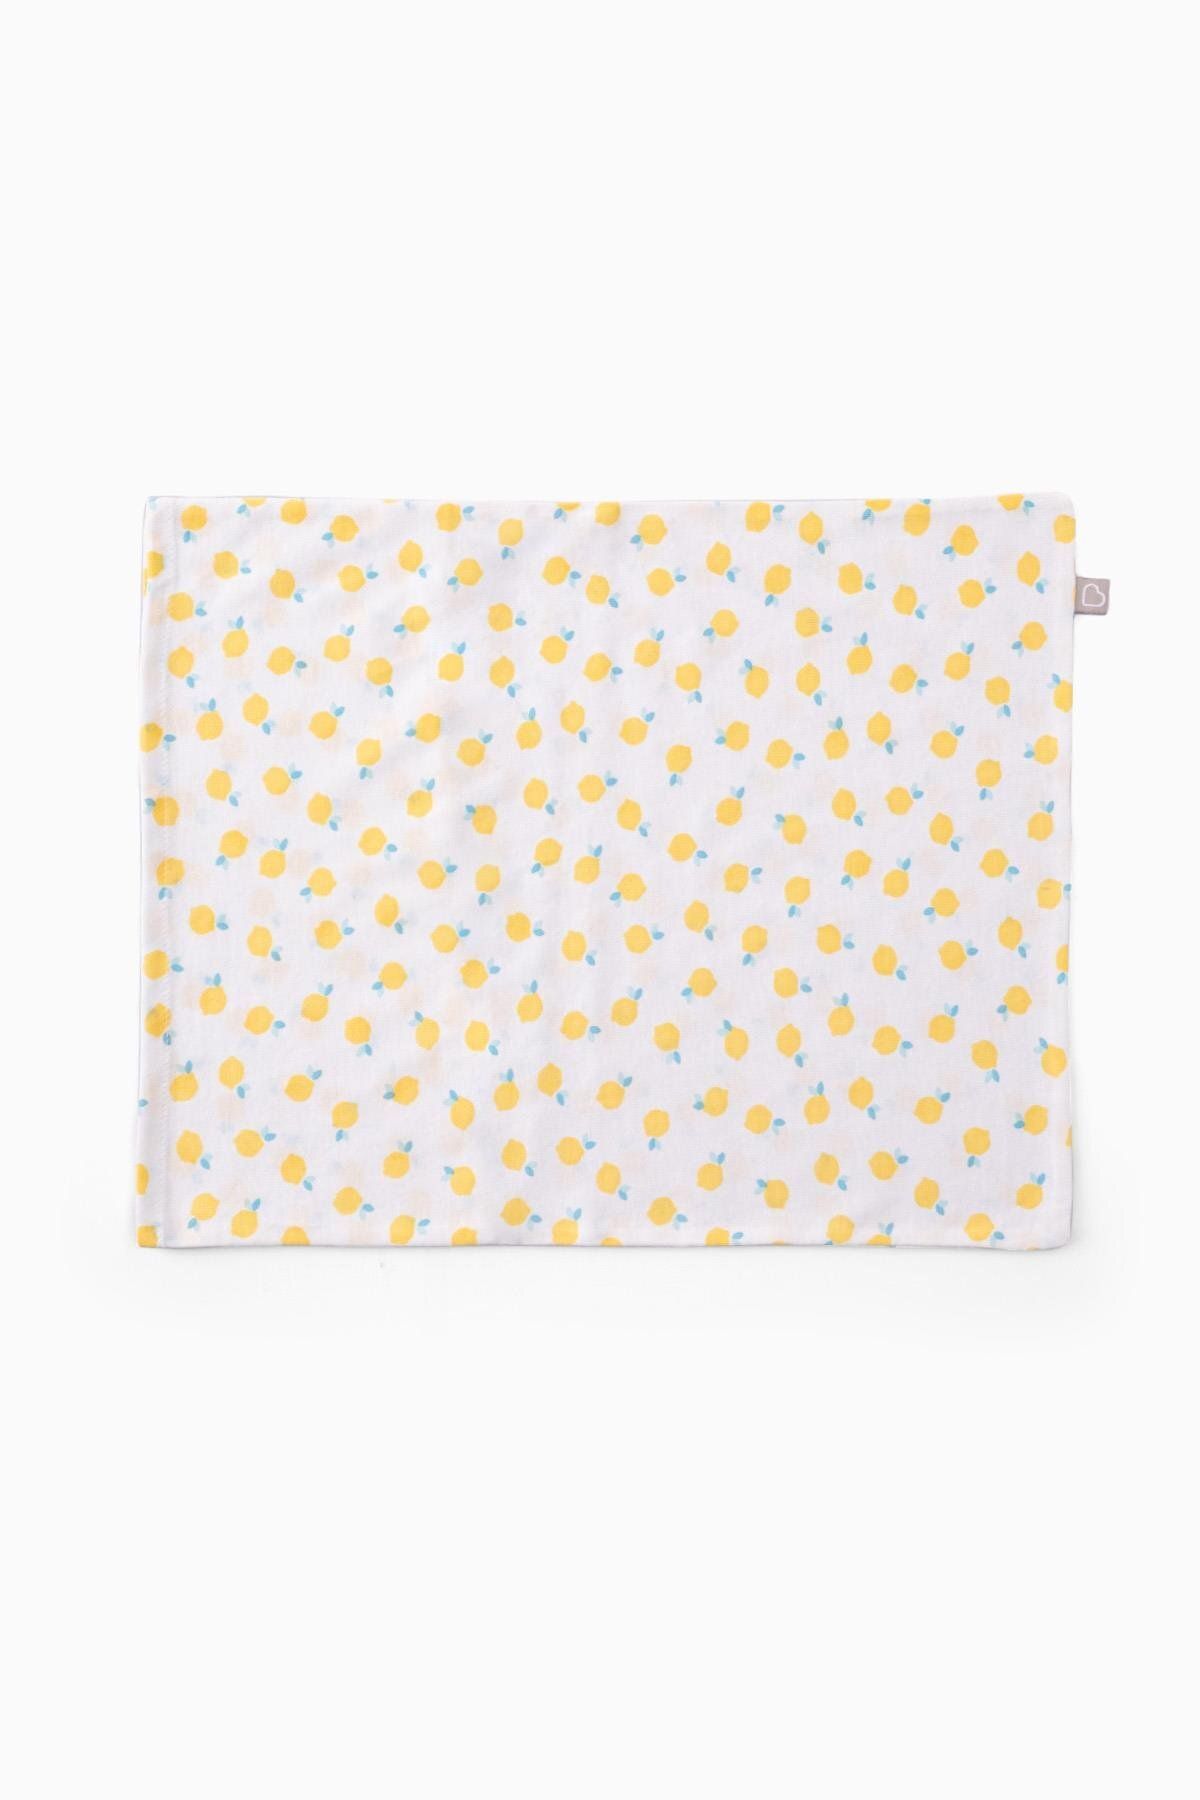 Boumini Bebek Yastık Kılıfı Limonlar Beyaz 35x45 cm